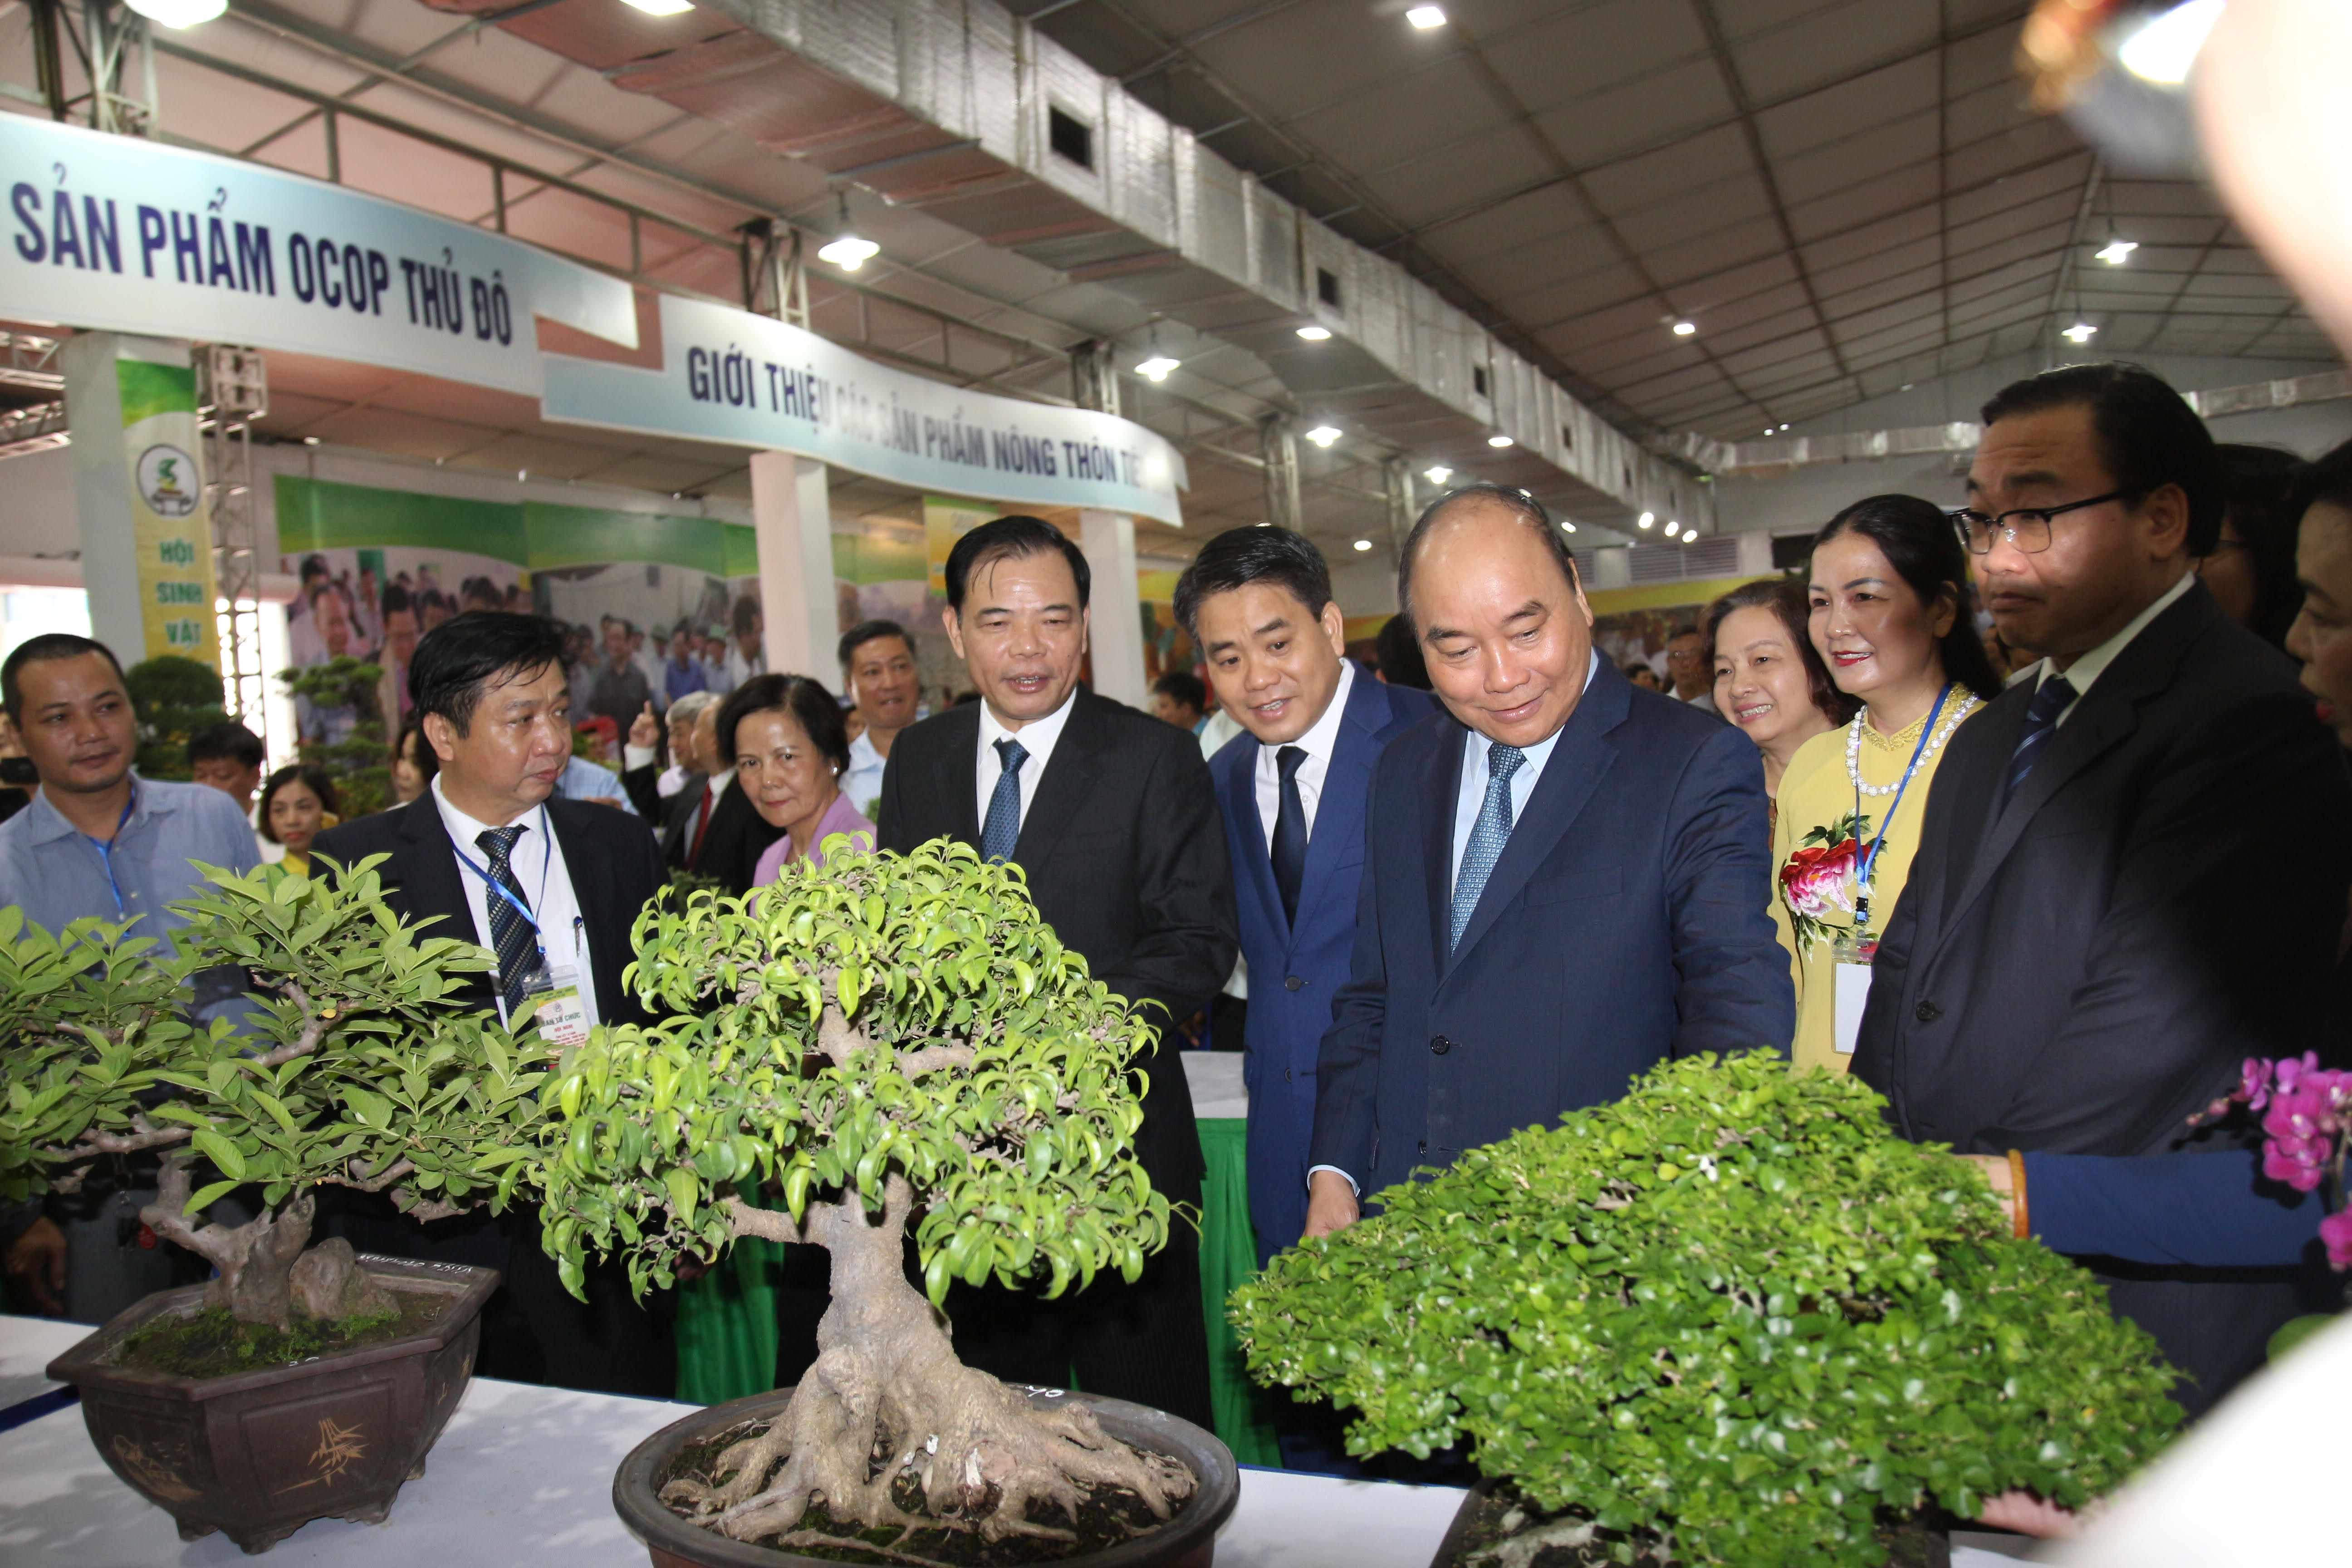 Thủ tướng Nguyễn Xuân Phúc cùng các Đại biểu tham dự Hội nghị thăm các gian hàng tại Hội chợ hàng nông sản, thủ công mỹ nghệ và sản phẩm OCOP Thủ đô.